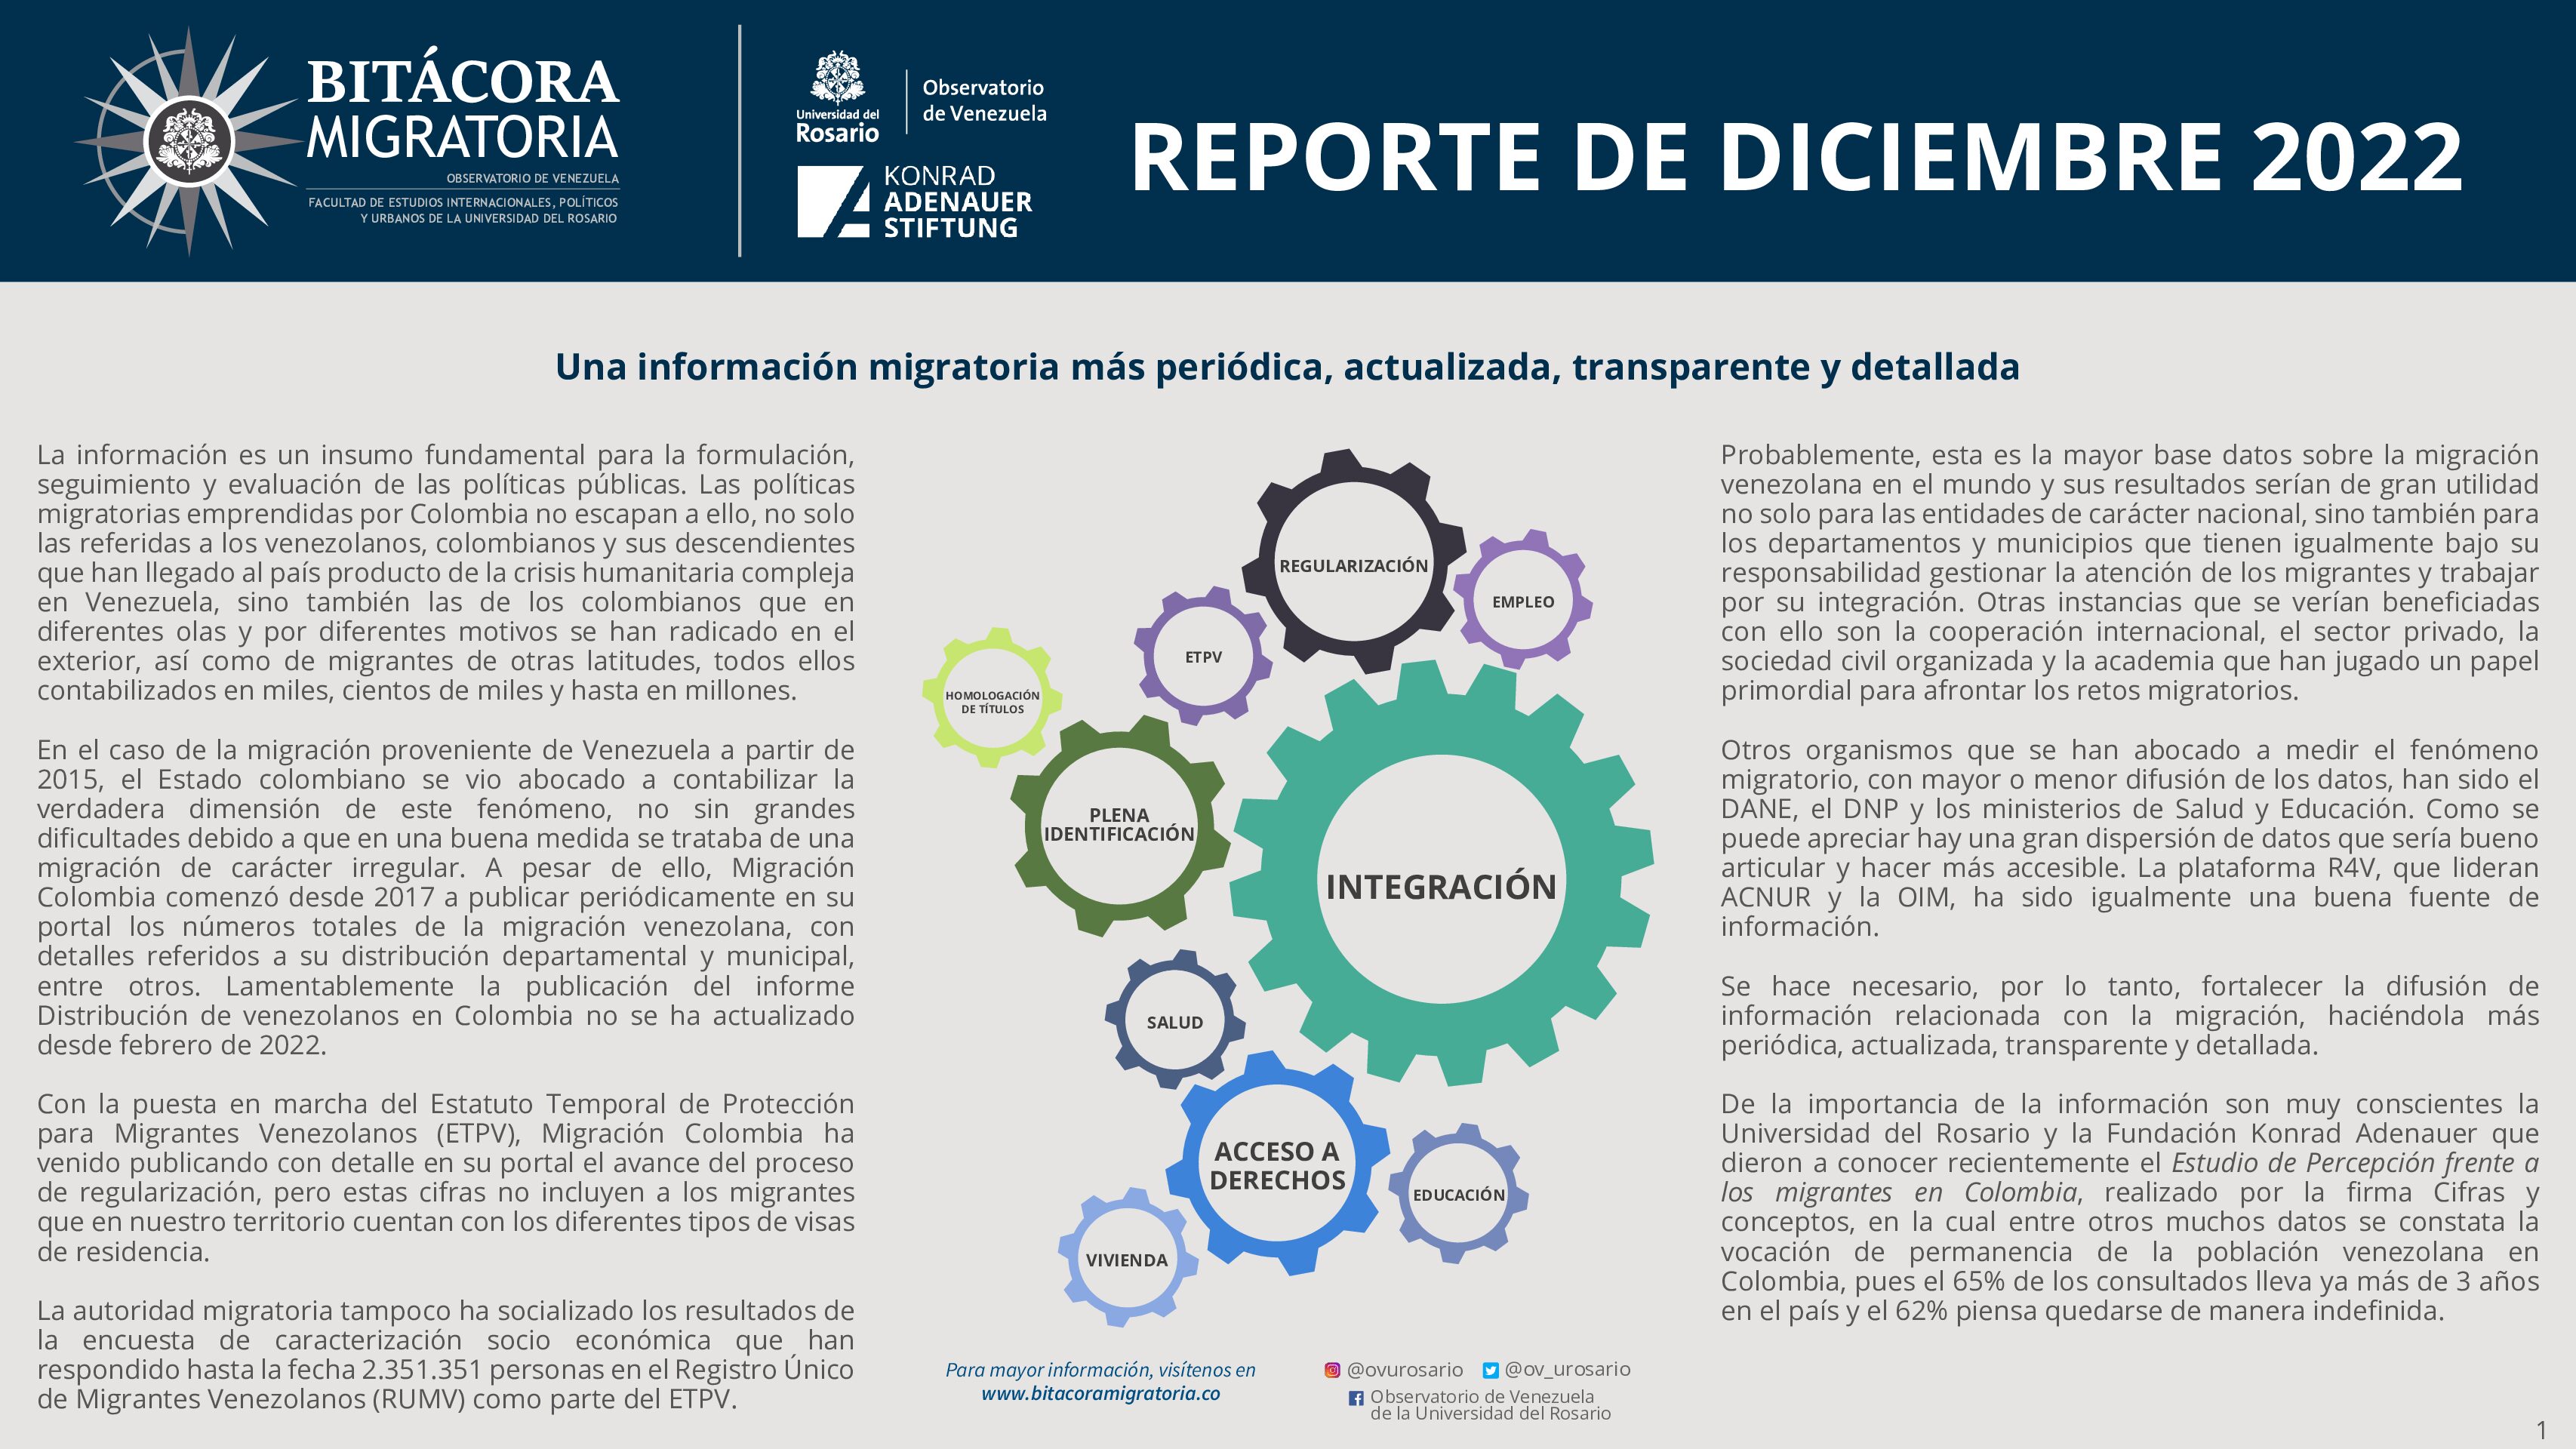 Reporte de Bitácora Migratoria / Diciembre 2022